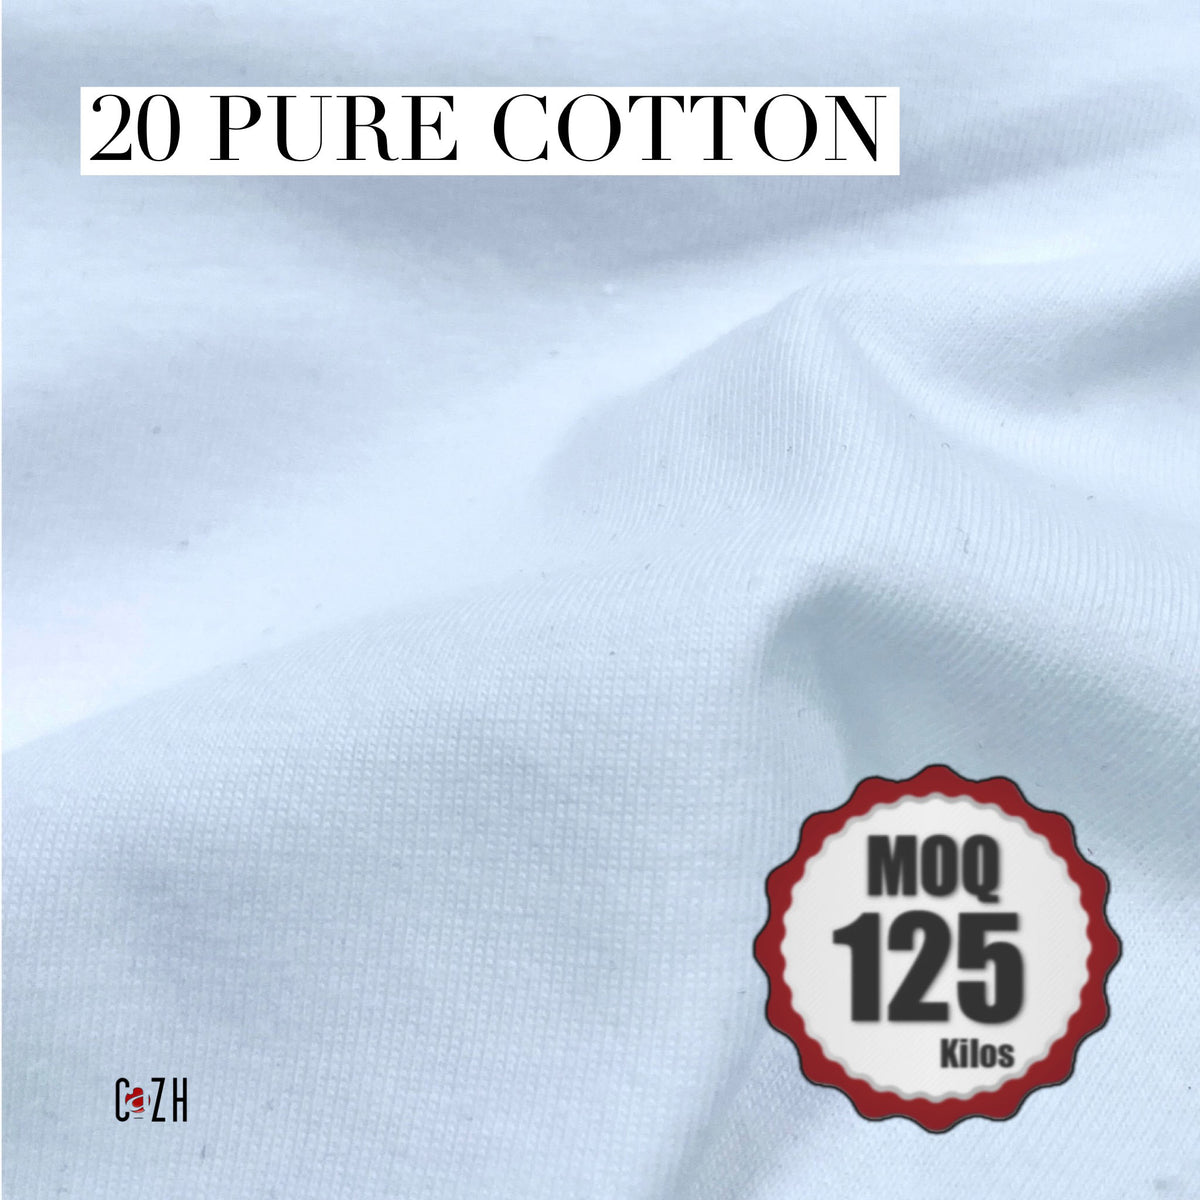 20 Pure Cotton  Philippine made 100% Pure Cotton Fabric – Cazh